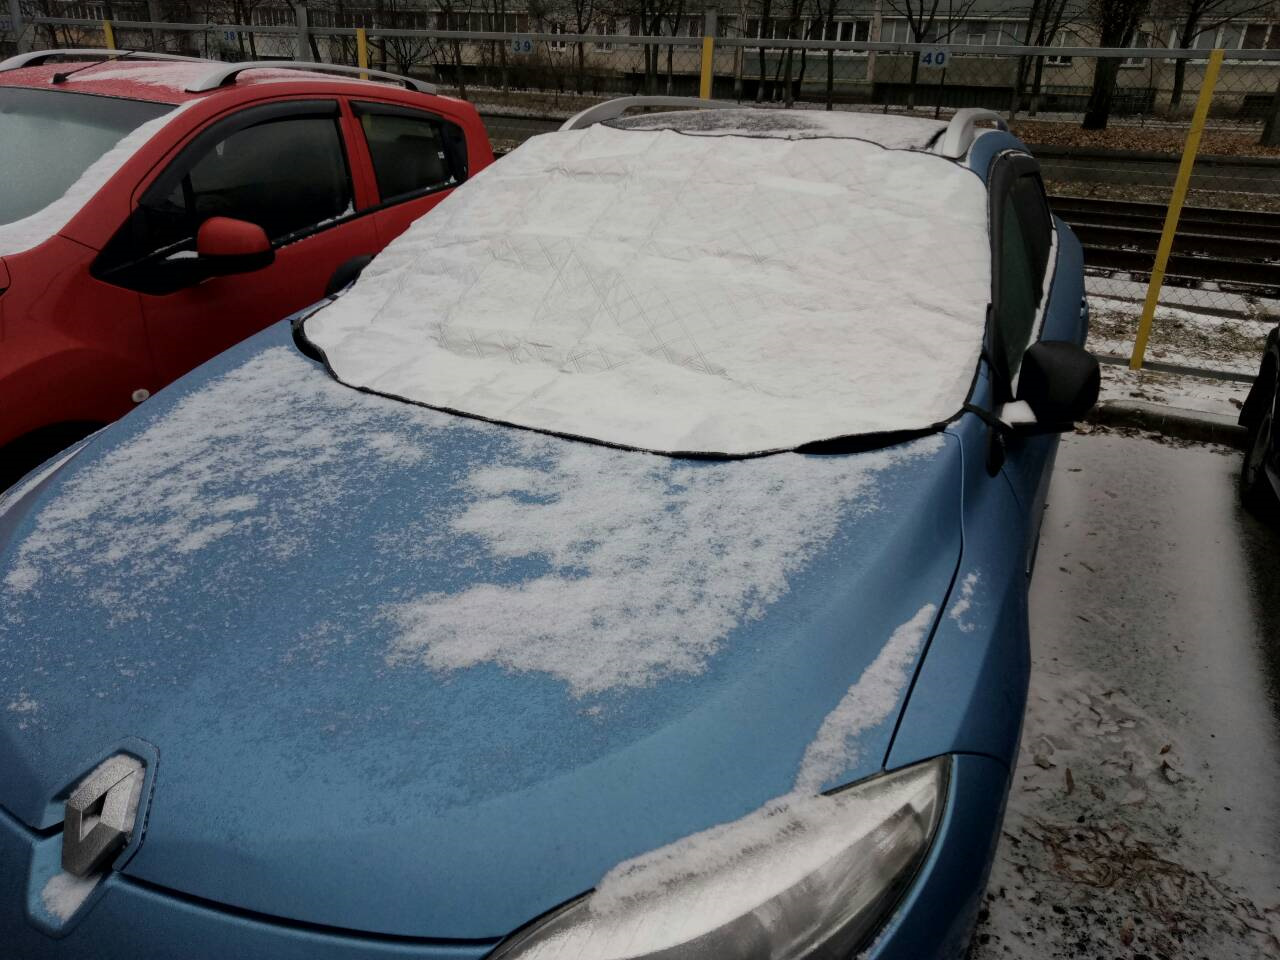 Тонировка зимой. Защита авто от наледи. Покрывало для машины от холода. Покрывало для лобового стекла зимой. Чехол на зеркала машины от наледи.